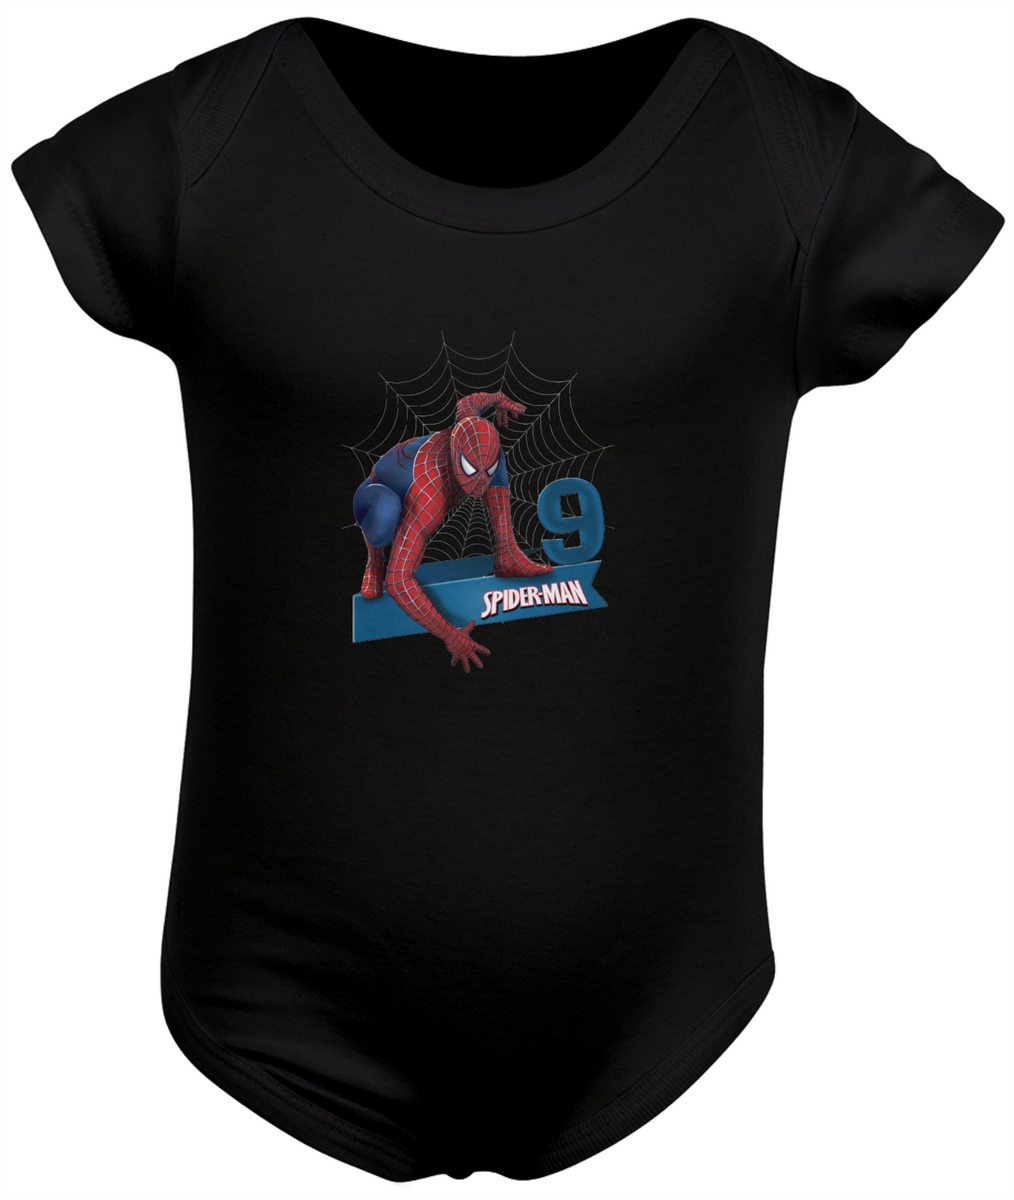 Nome do produto: Body infantil 09 aninhos spiderman